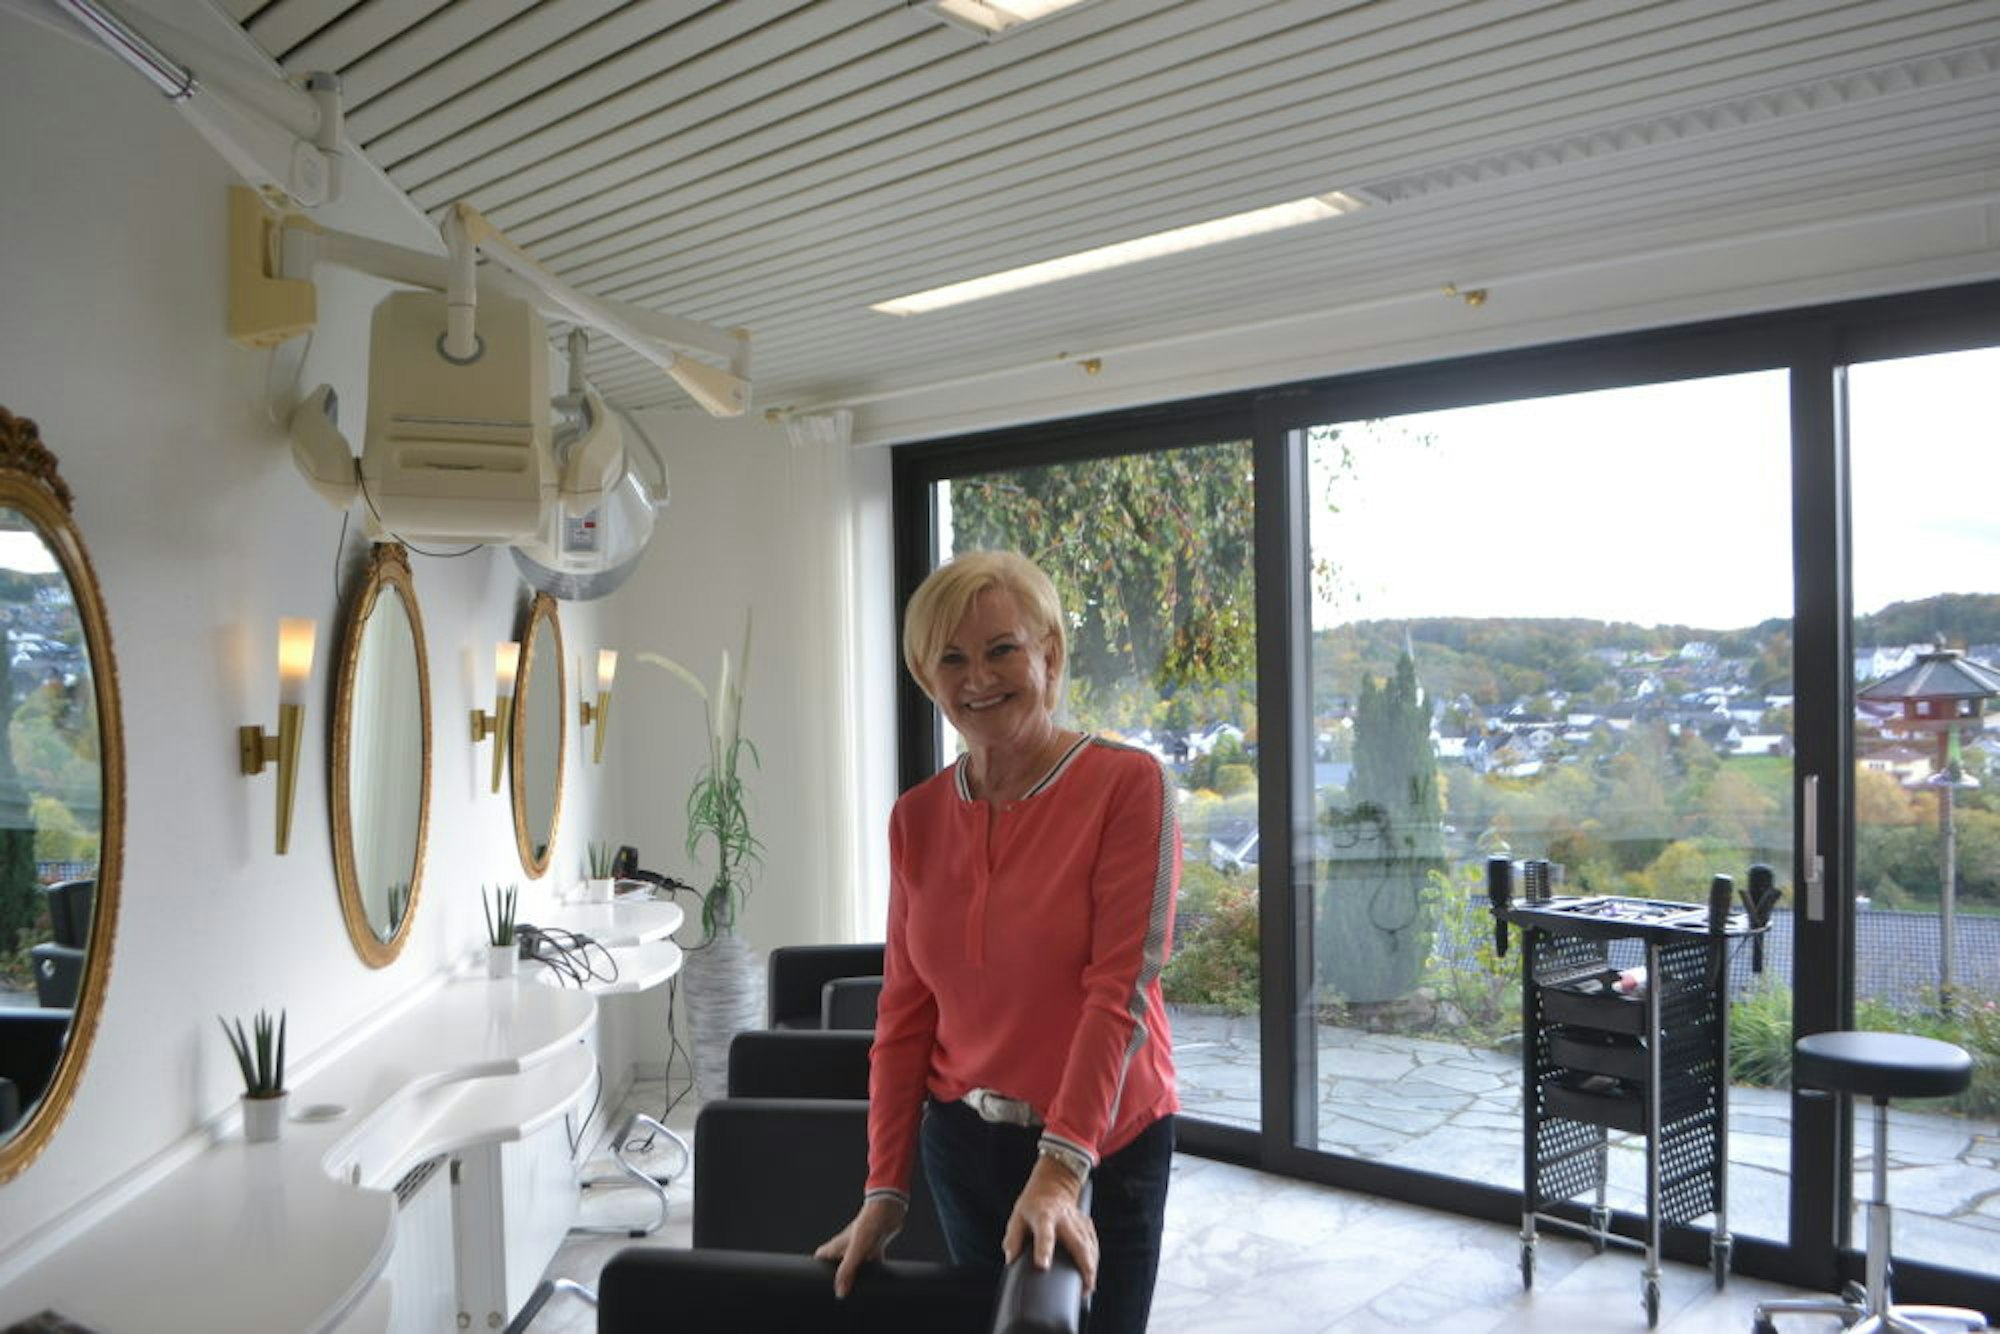 Steigende Wertschätzung der Arbeit der Friseure erwartet Bernadette Hein.